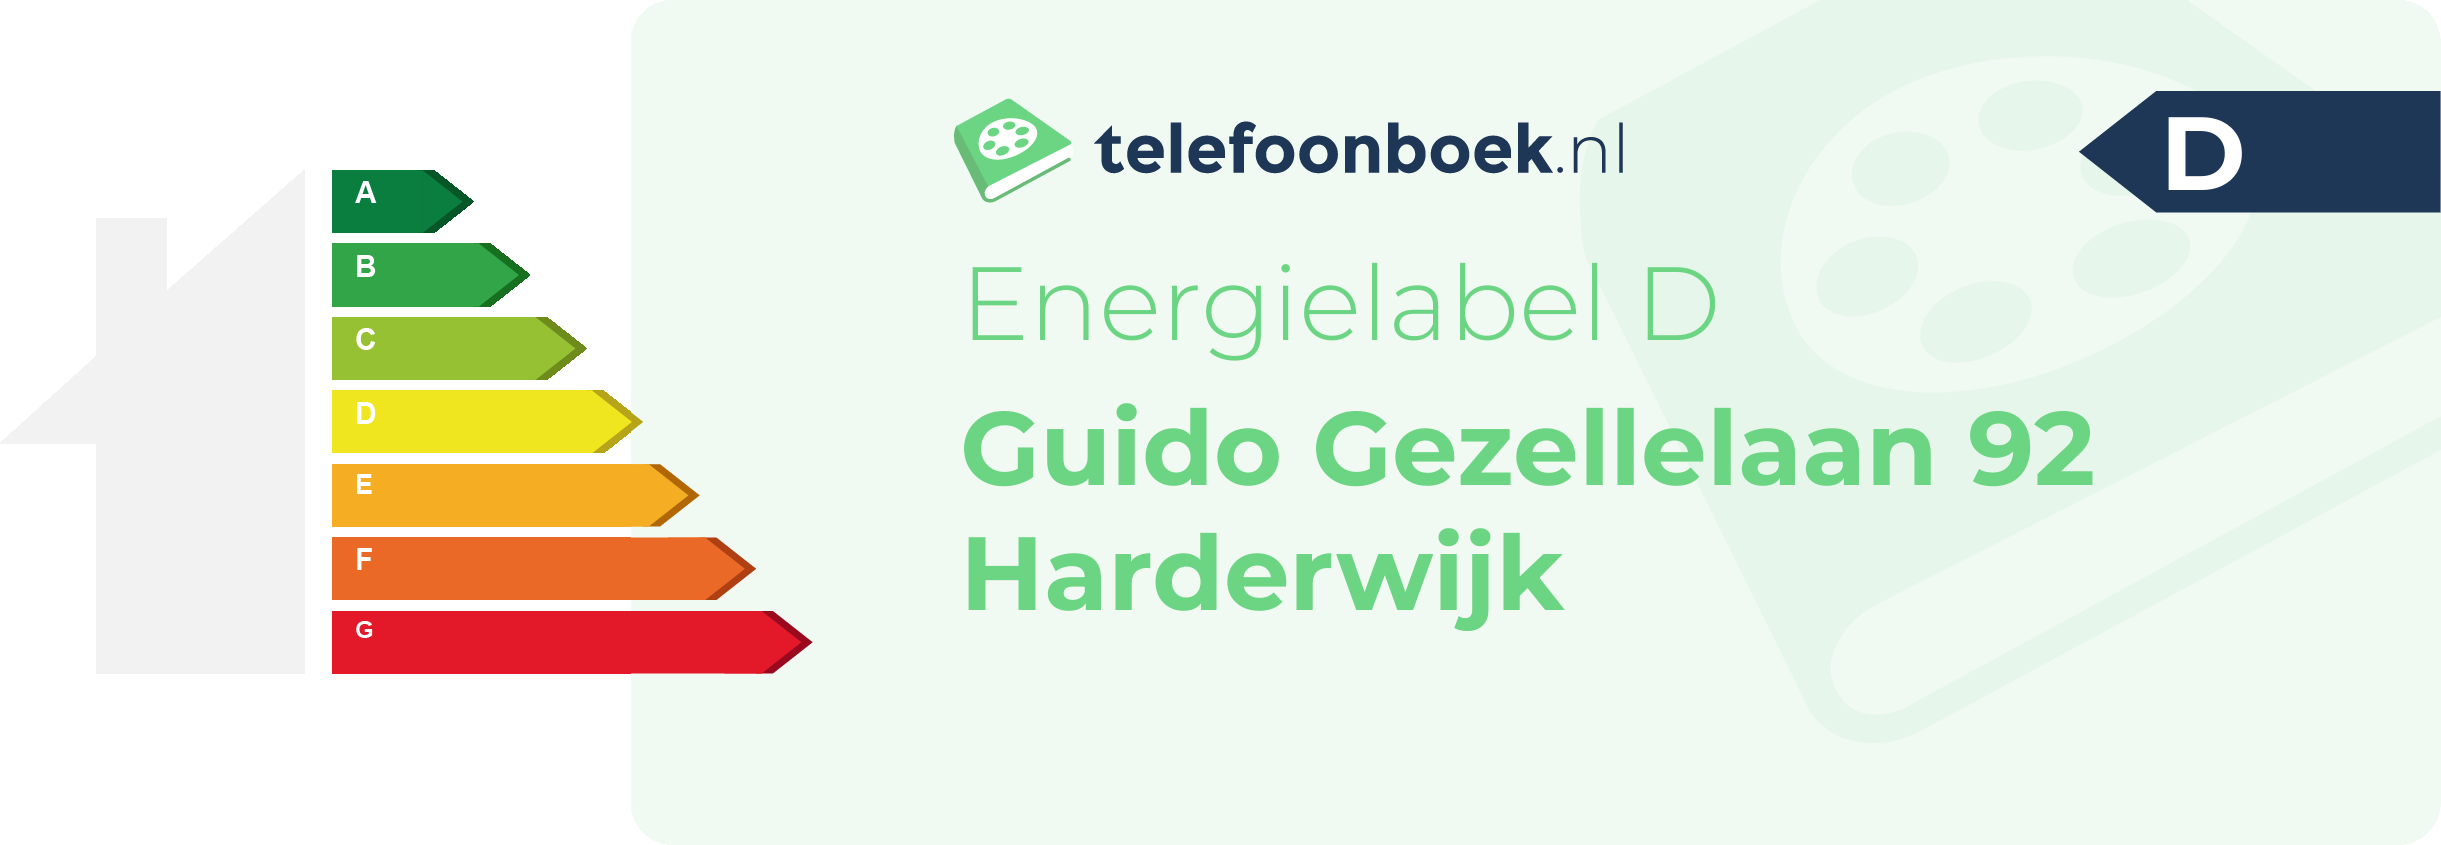 Energielabel Guido Gezellelaan 92 Harderwijk